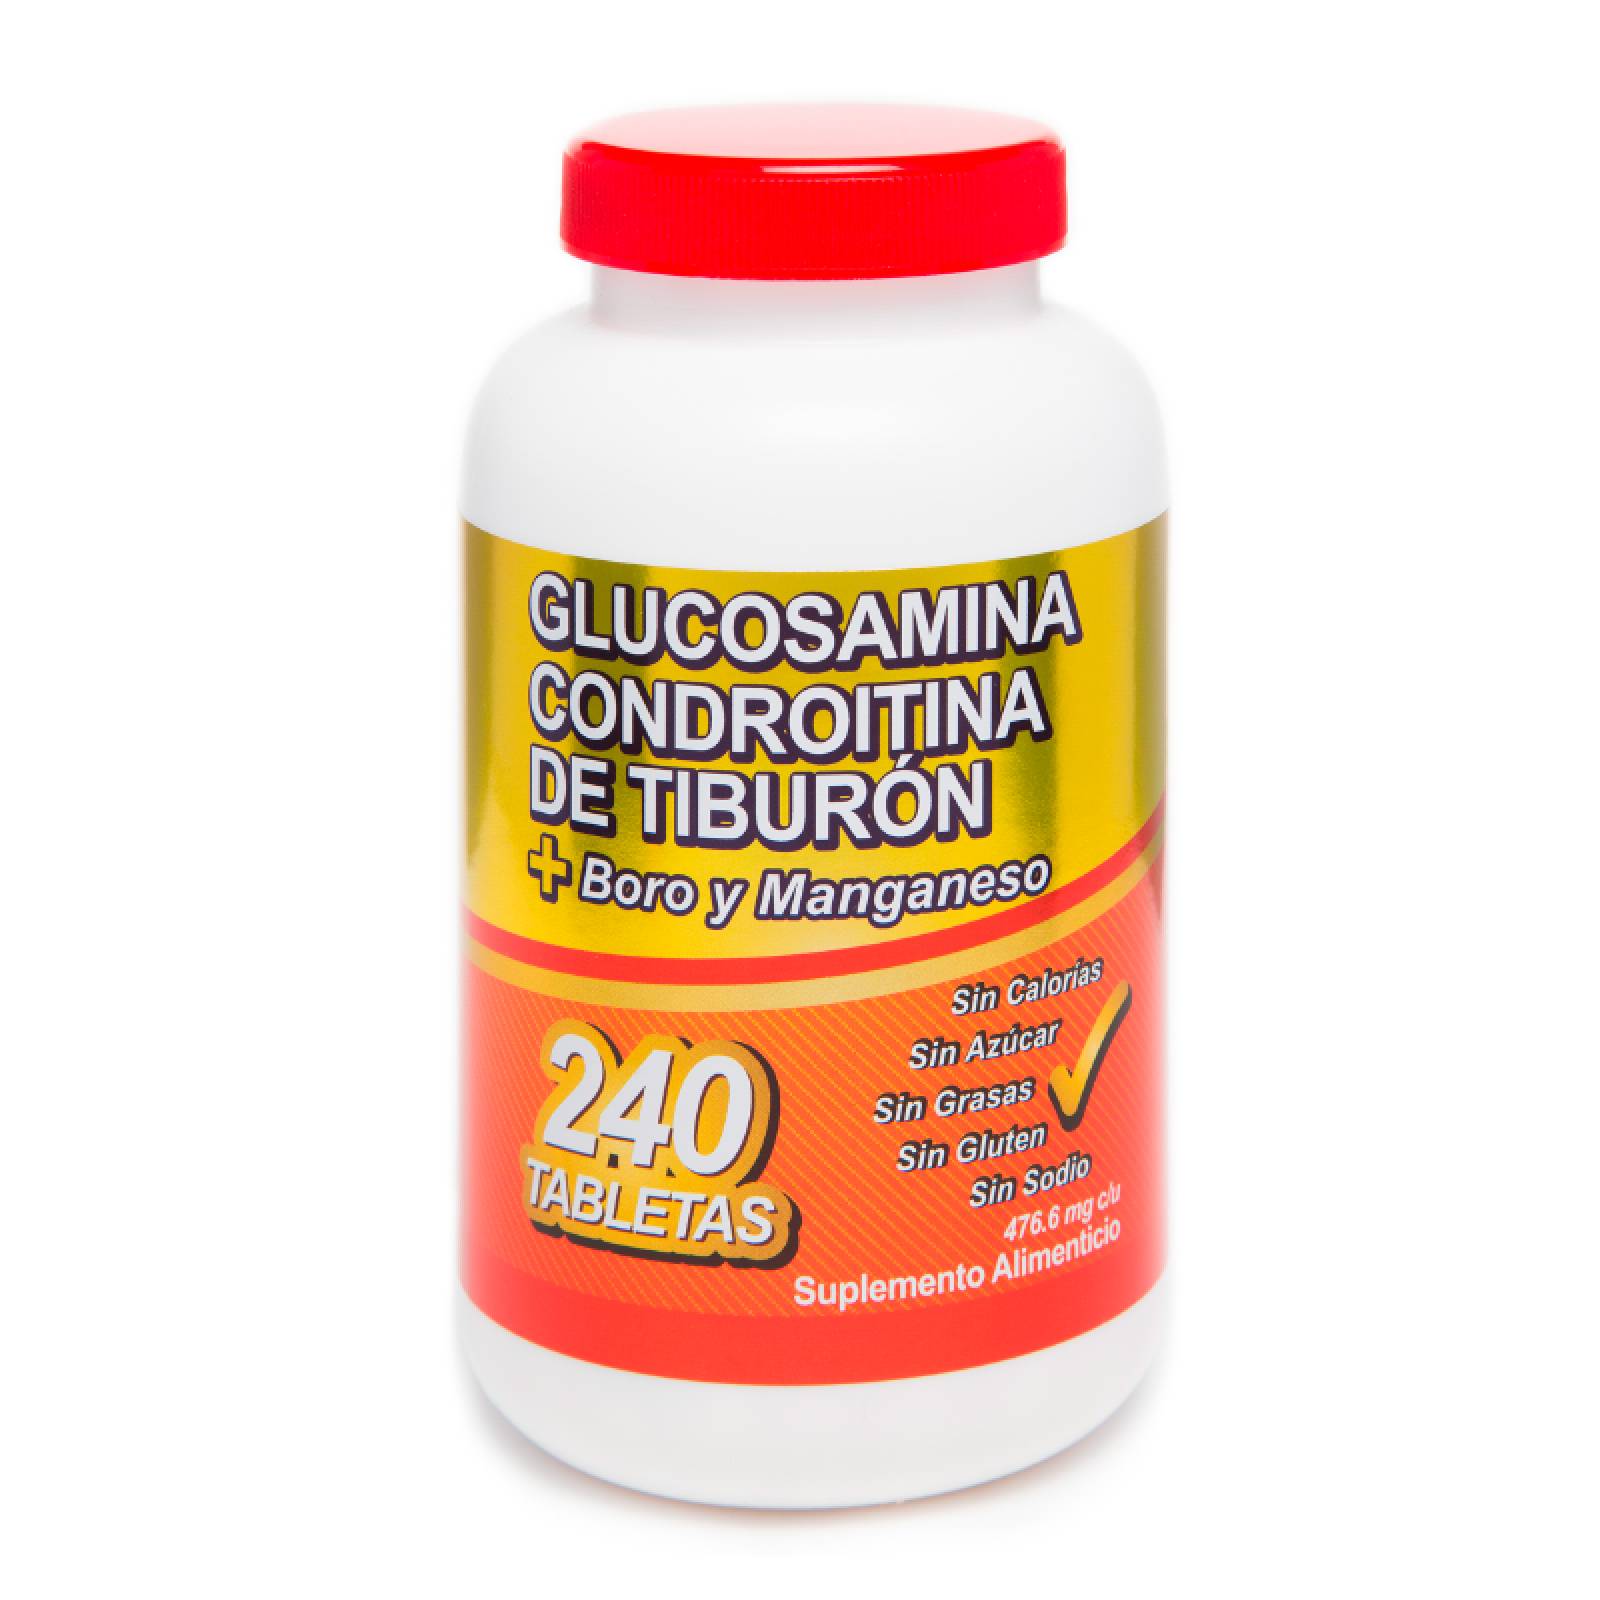 Suplemento Alimenticio de Glucosamina / Condroitina tiburon Con 240 Tabletas